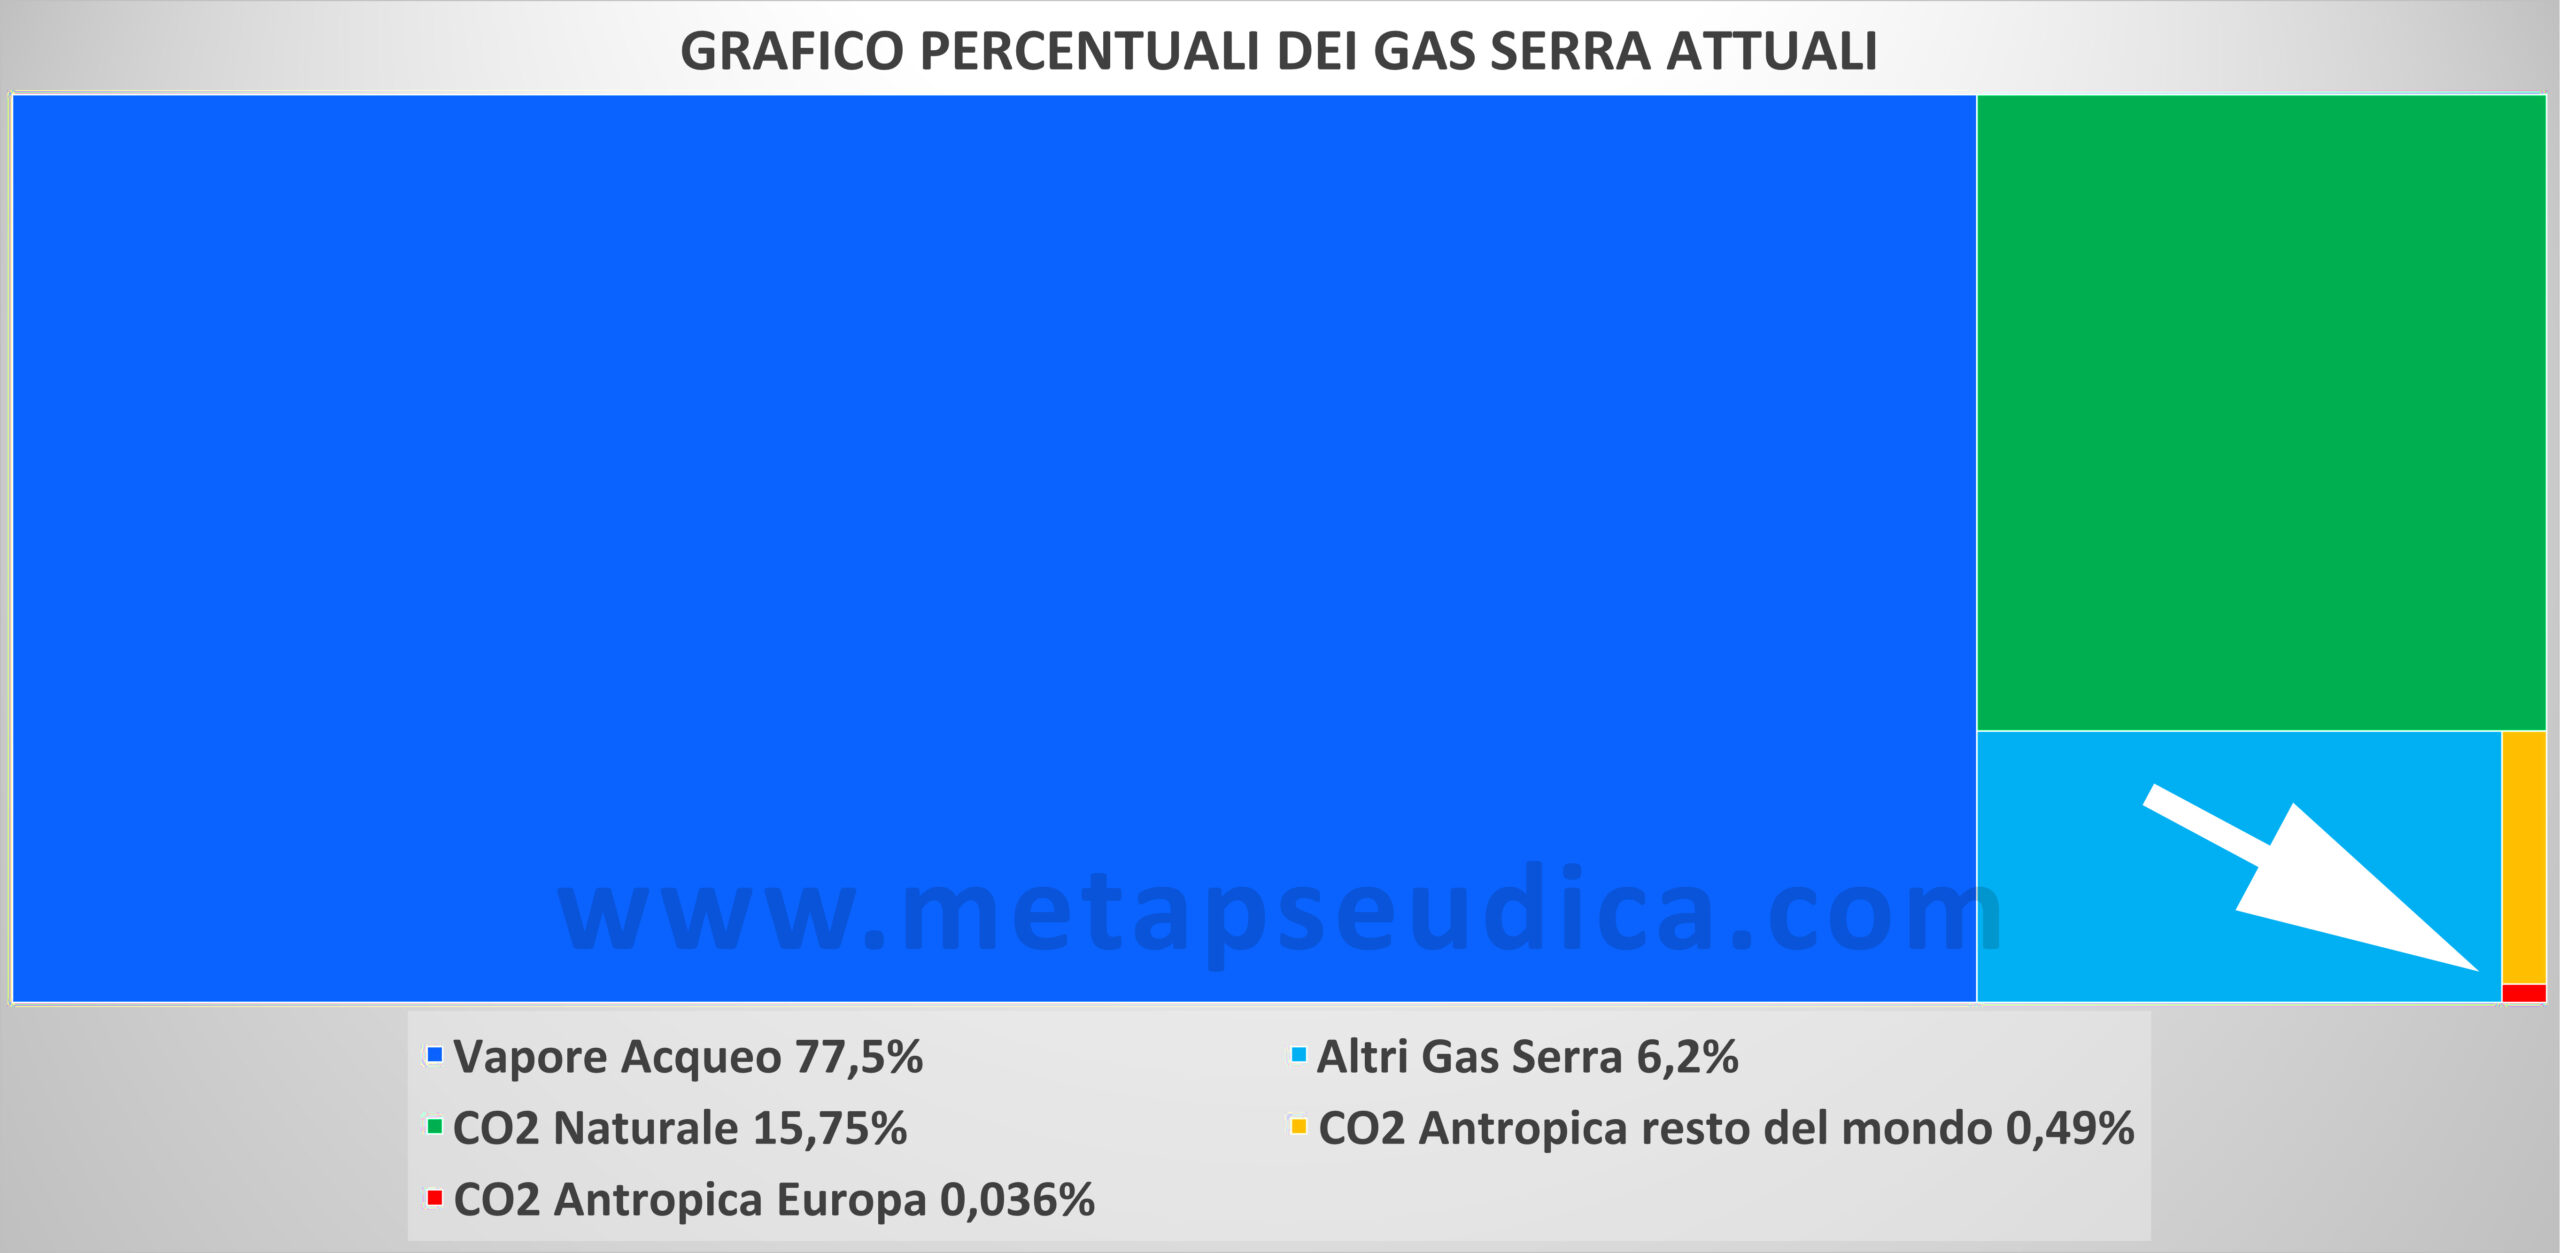 Grafico percentuali dei gas serra attuali